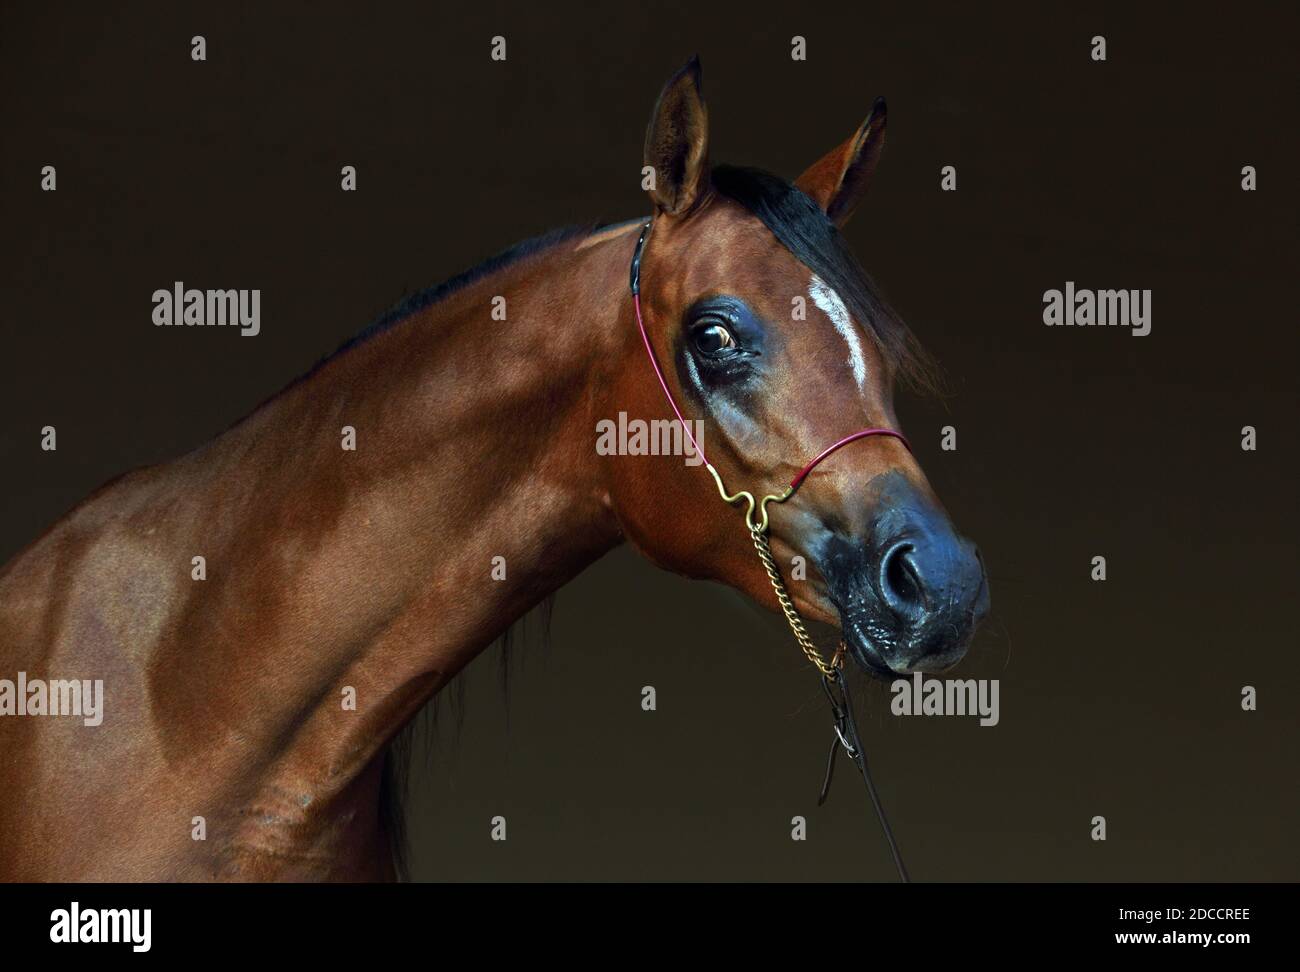 Vollblutaraber Pferd, Porträt einer bay Mare mit Schmuck Gebiß in dunklen Hintergrund Stockfoto